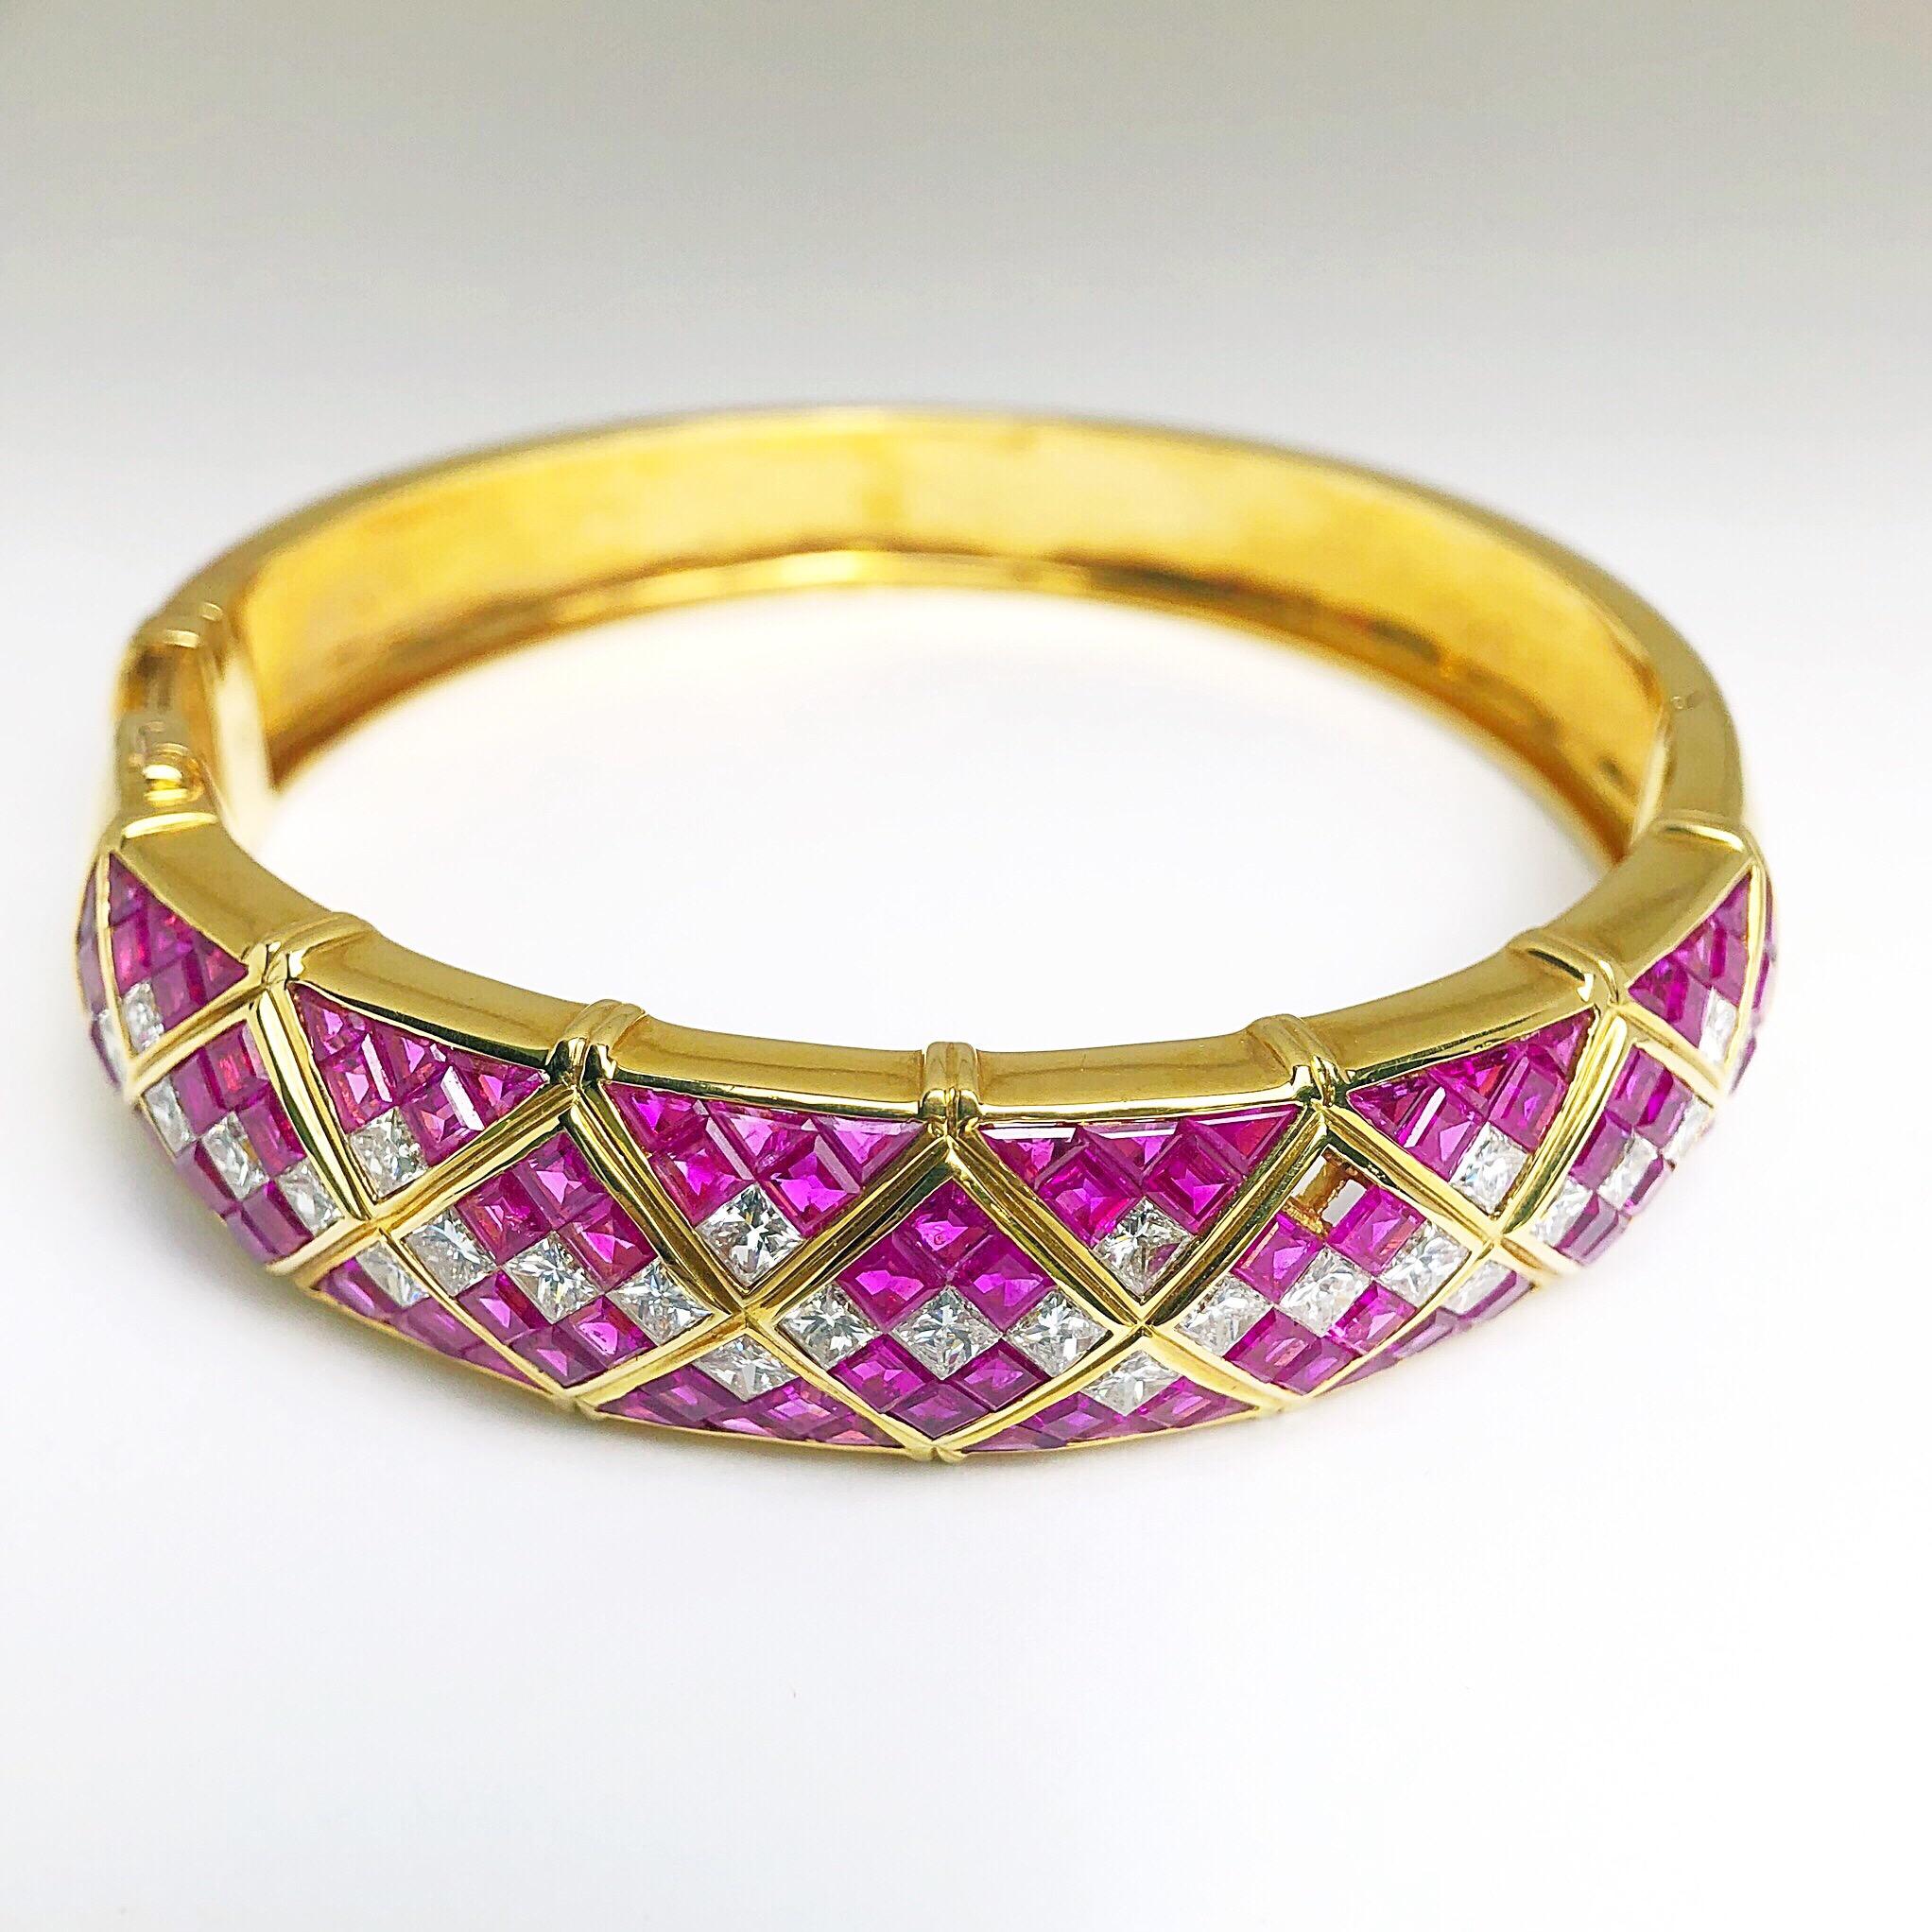 Entworfen mit 10,35 Karat rosa Saphiren im Quadratschliff und 3,91 Karat weißen Saphiren im Prinzessschliff  Diamanten, bleibt dieses Vintage-Armband zeitlos. Das aus 18 Karat Gelbgold gefertigte Armband misst 2 3/8